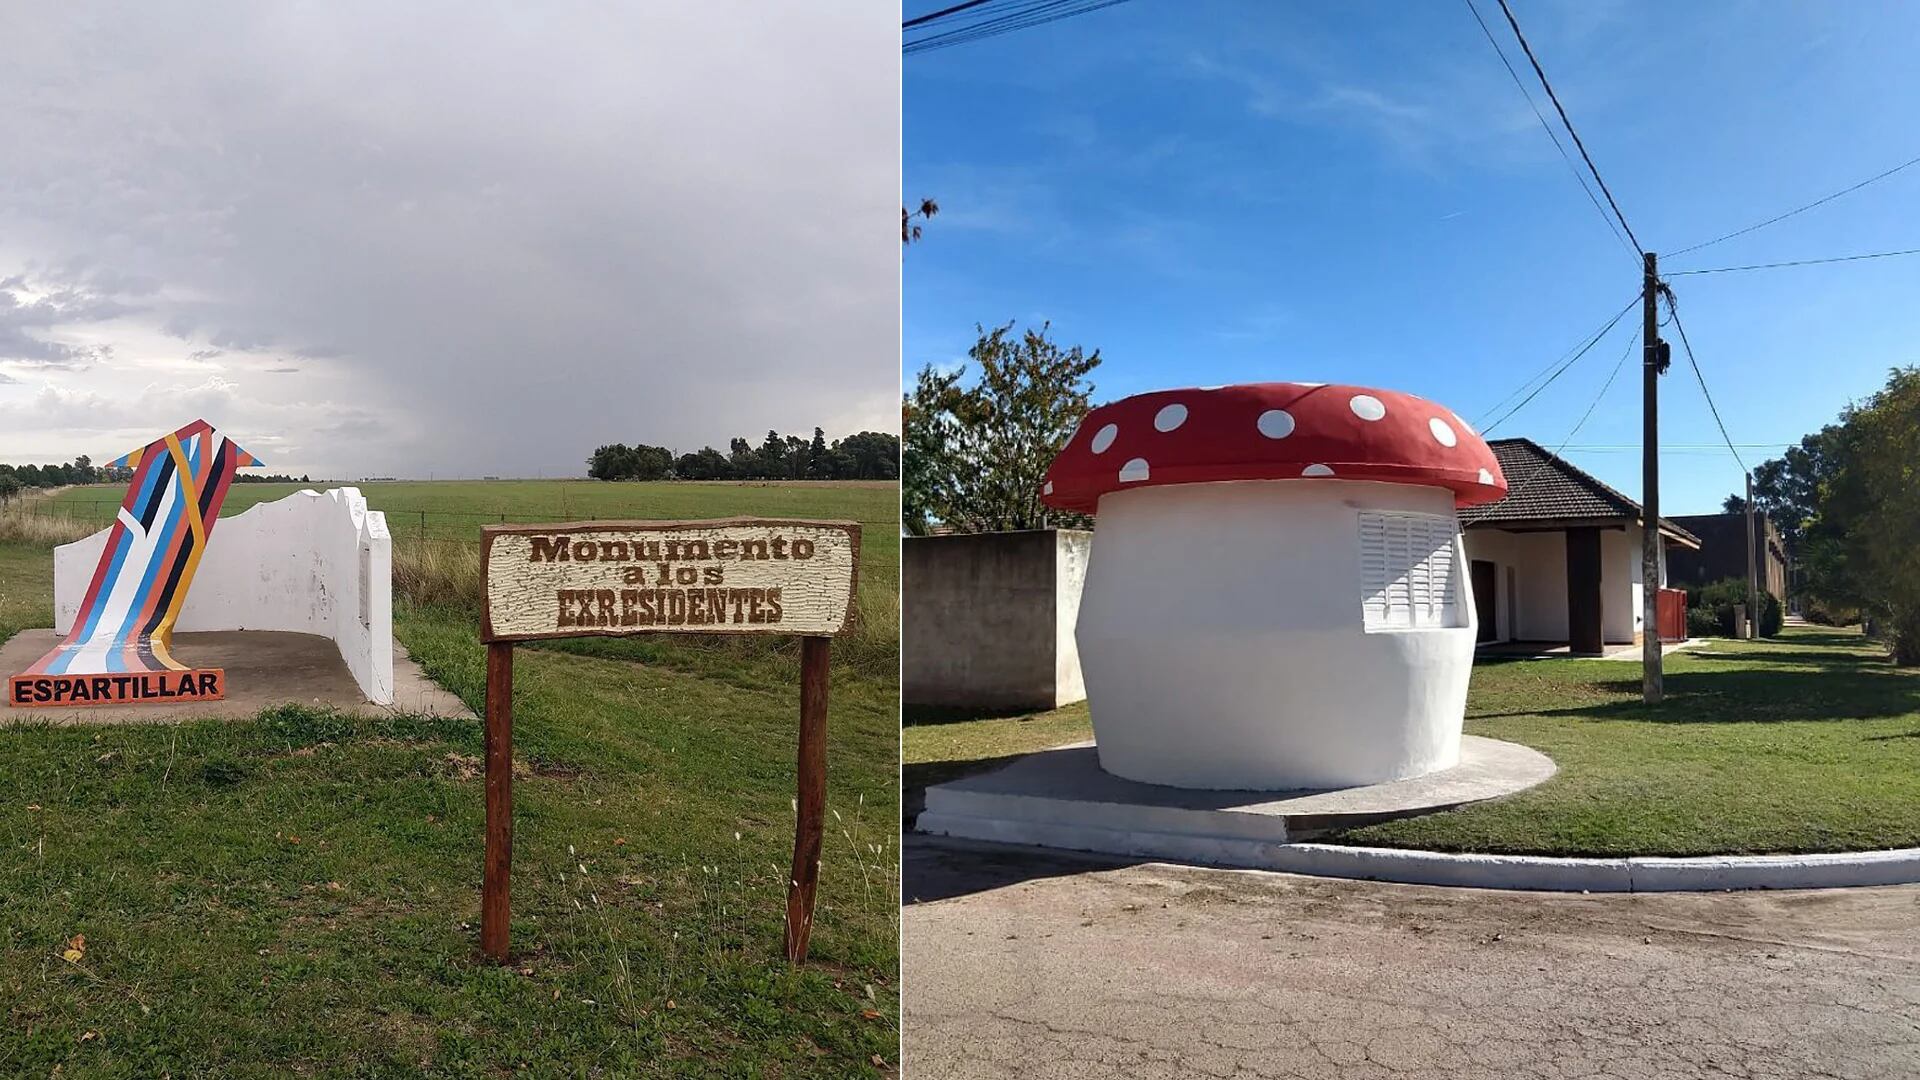 Algunas de las curiosidades de Espartillar: el Monumento a los Expresidentes y el hongo gigante, que es la fachada de un kiosco de la localidad